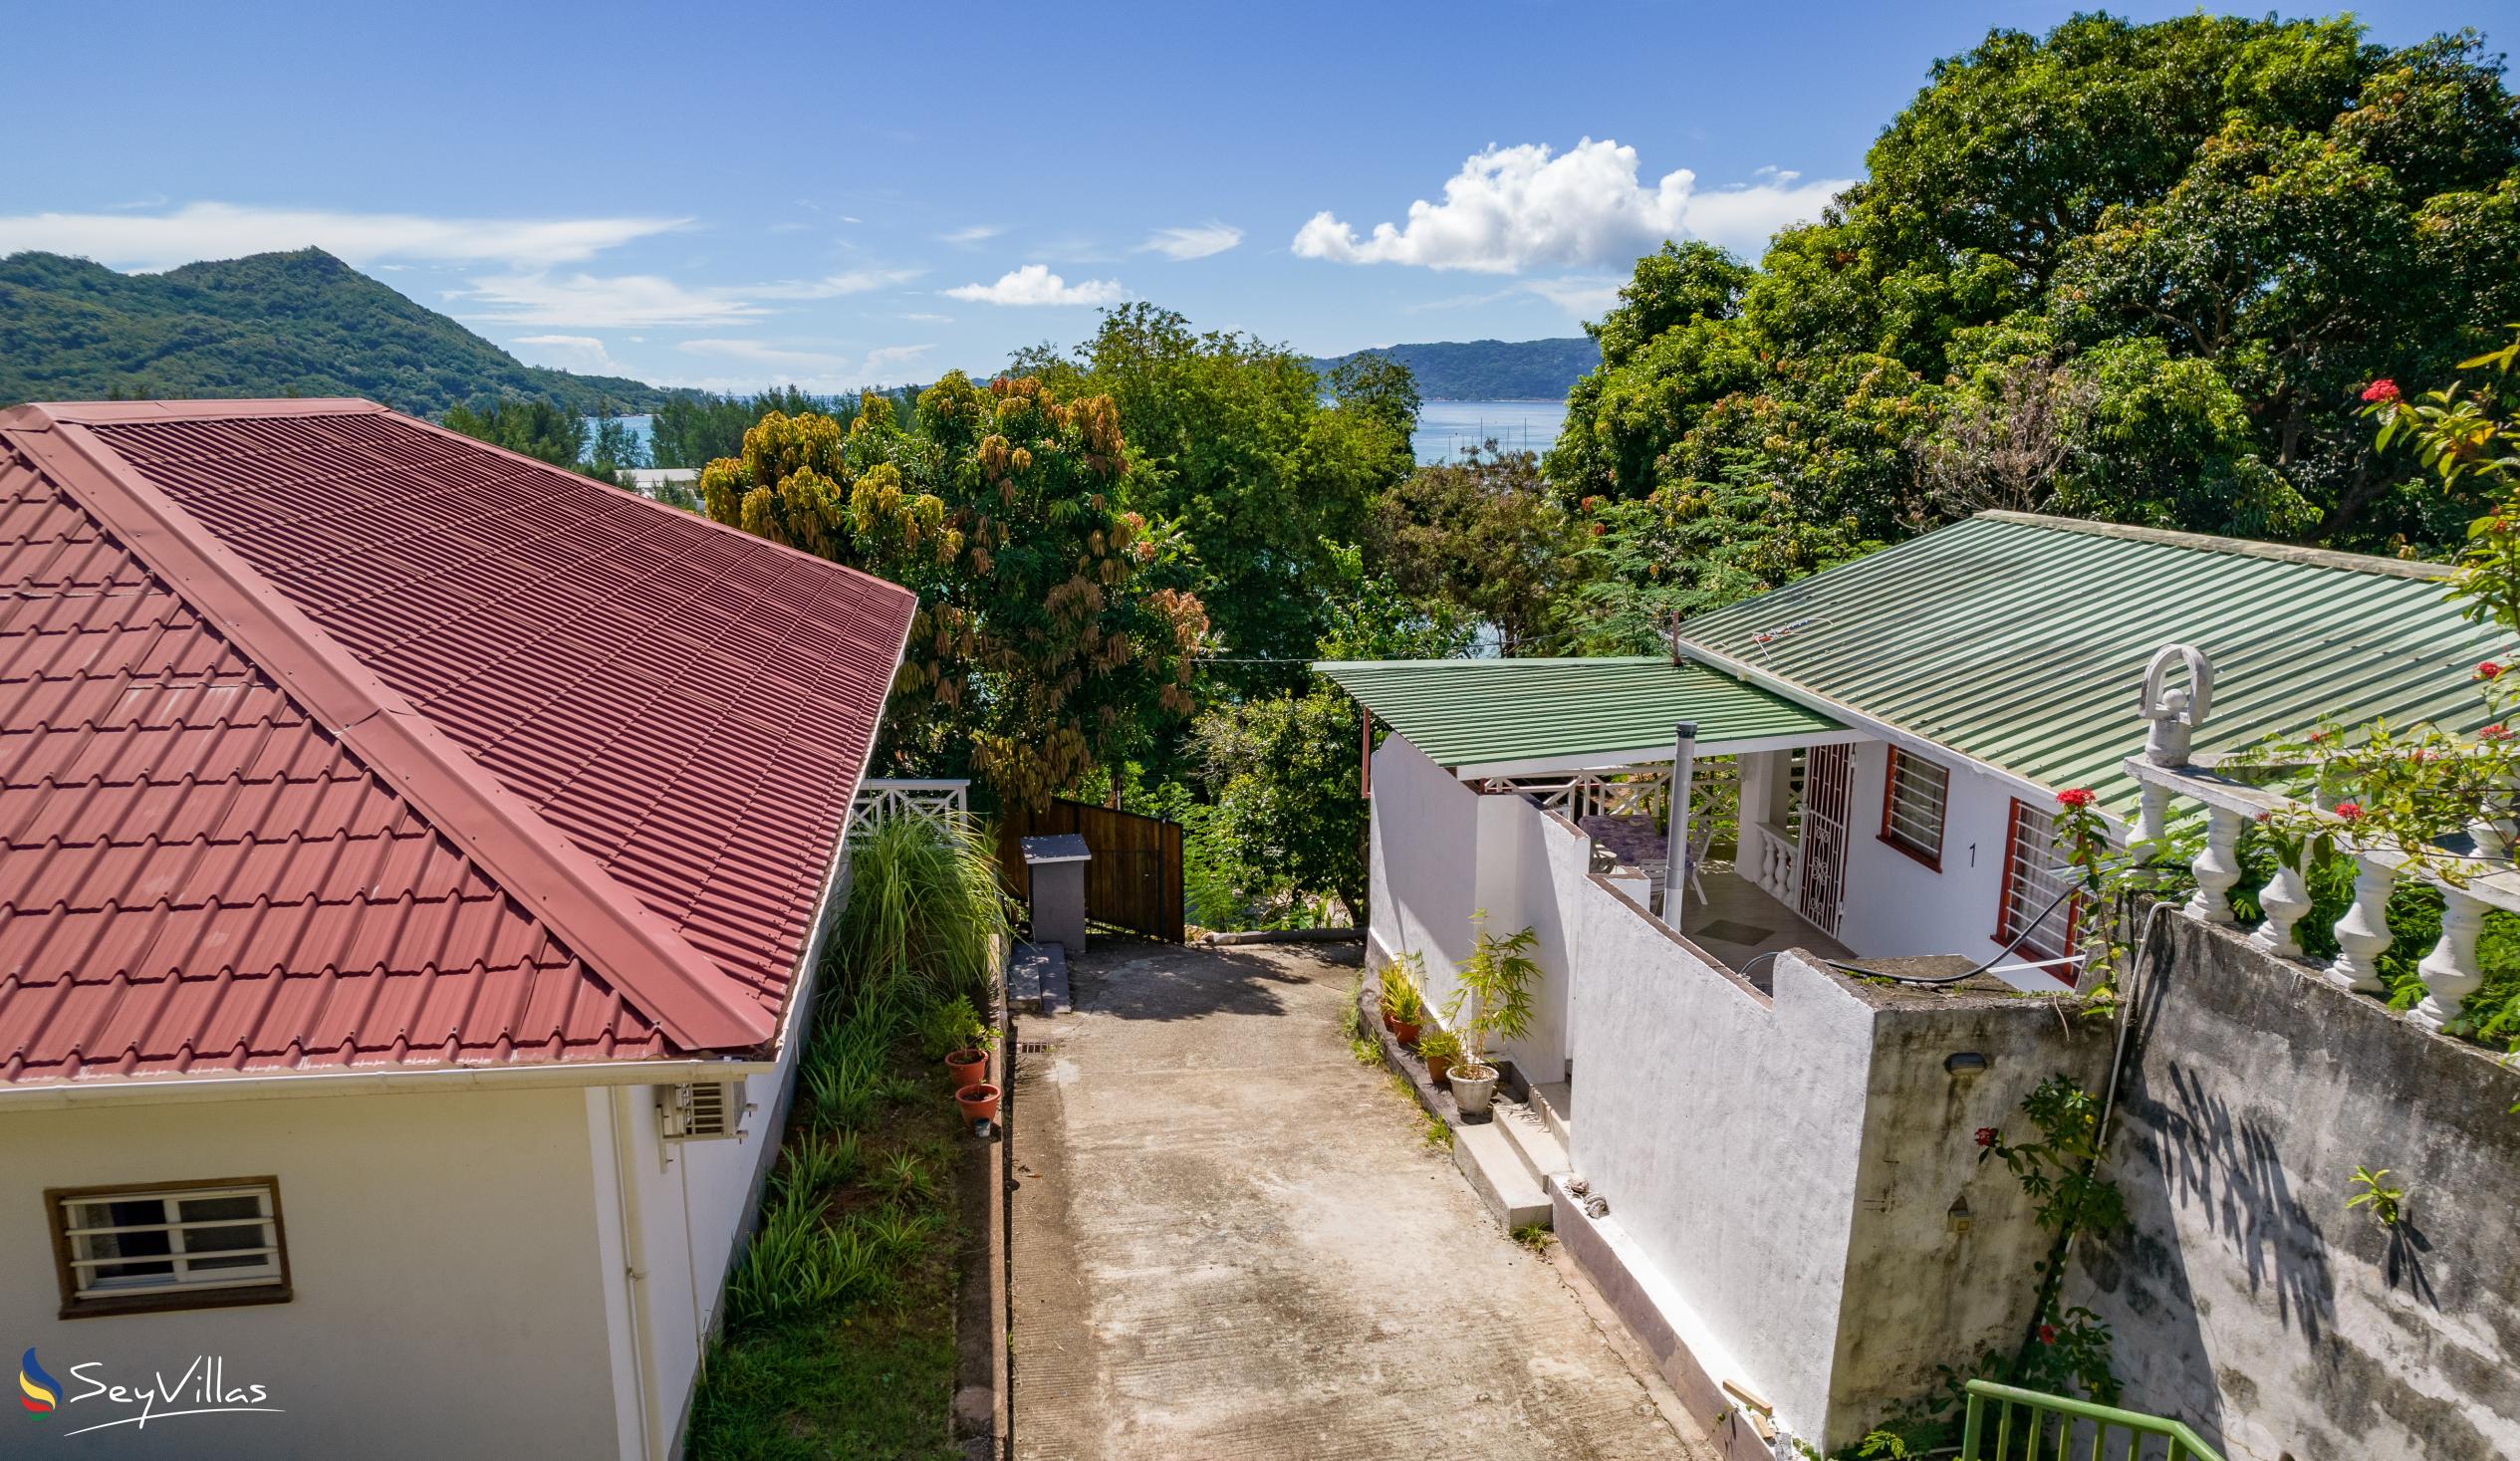 Foto 2: Baie Ste Anne Maison des Vacanze - Aussenbereich - Praslin (Seychellen)